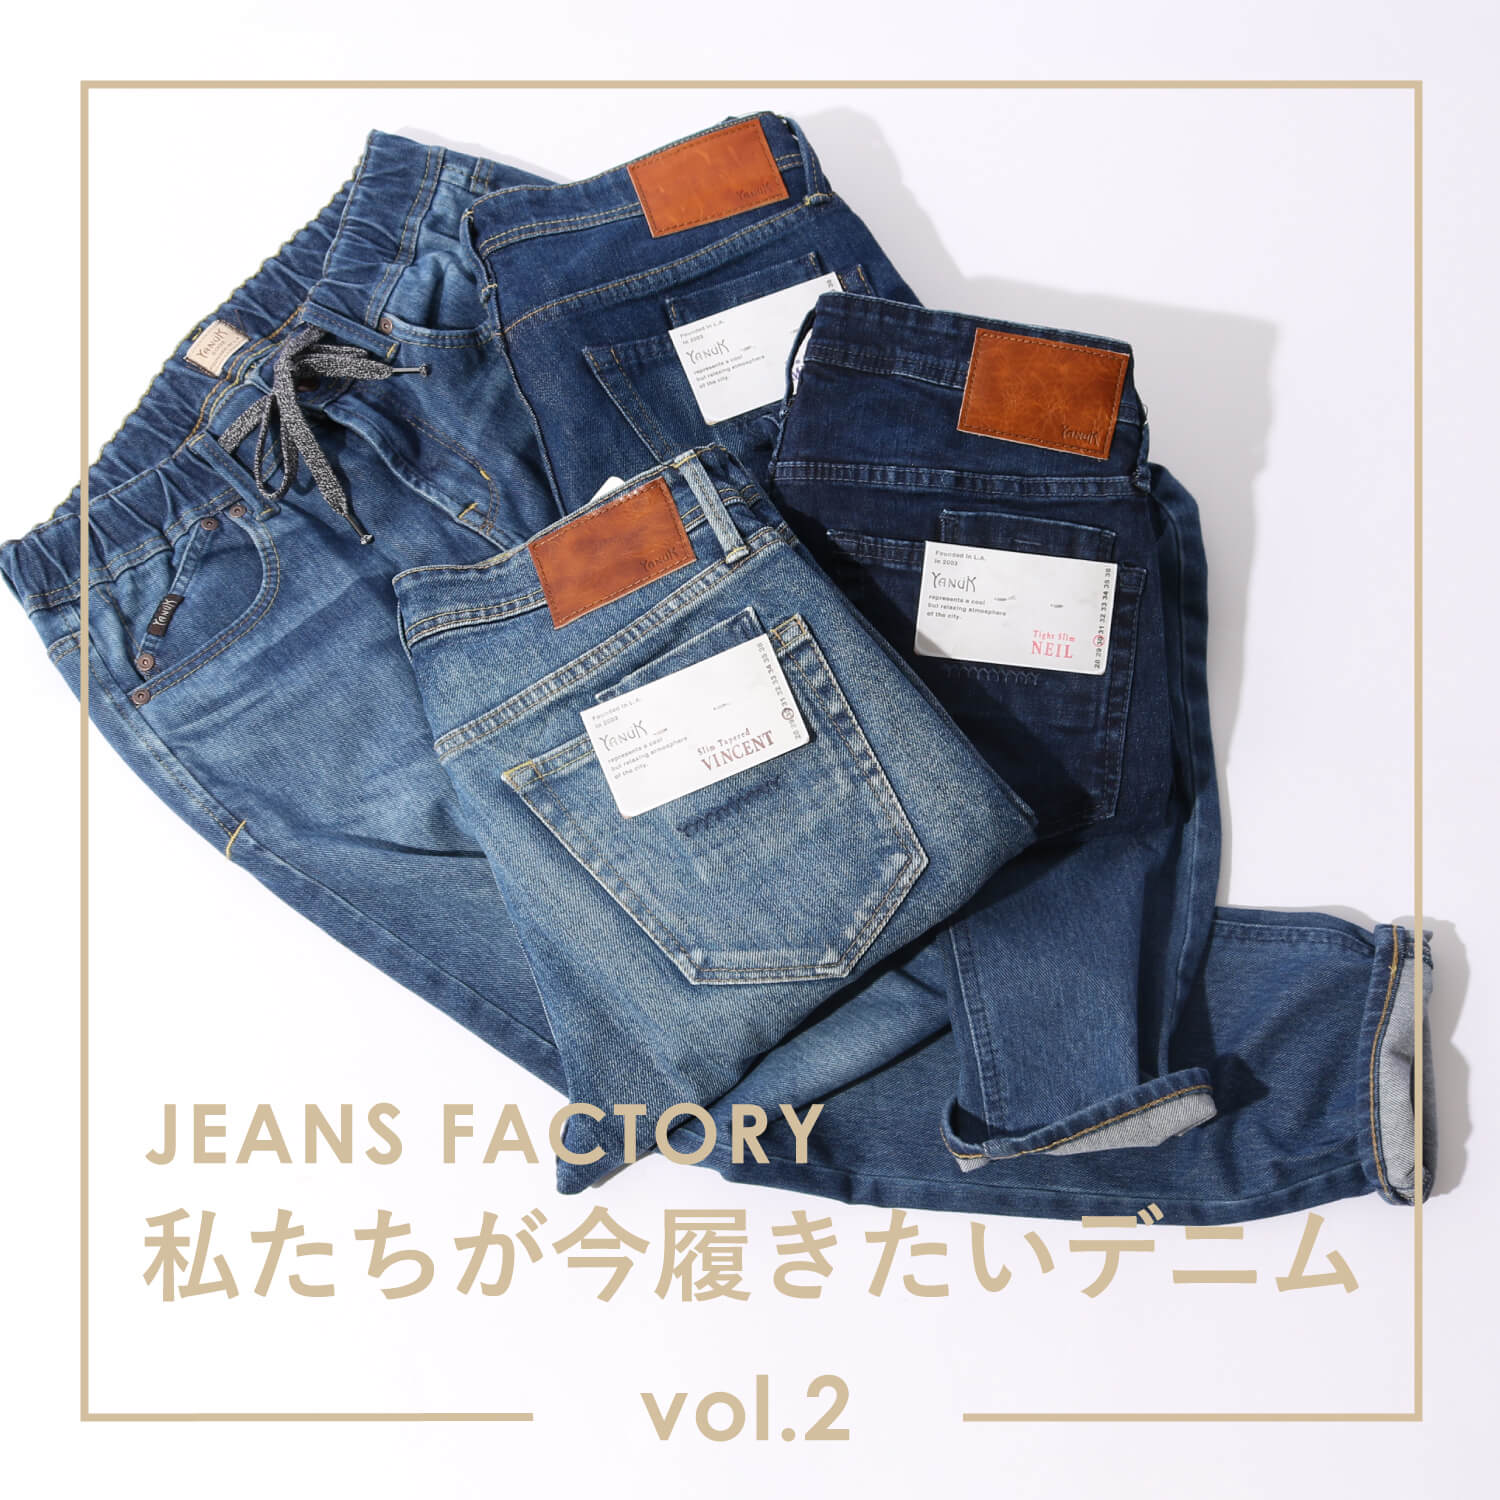 リラックス感漂うyanuk ヤヌーク 私たちが今履きたいデニム Vol 2 Jeans Factory ジーンズファクトリー 公式サイト